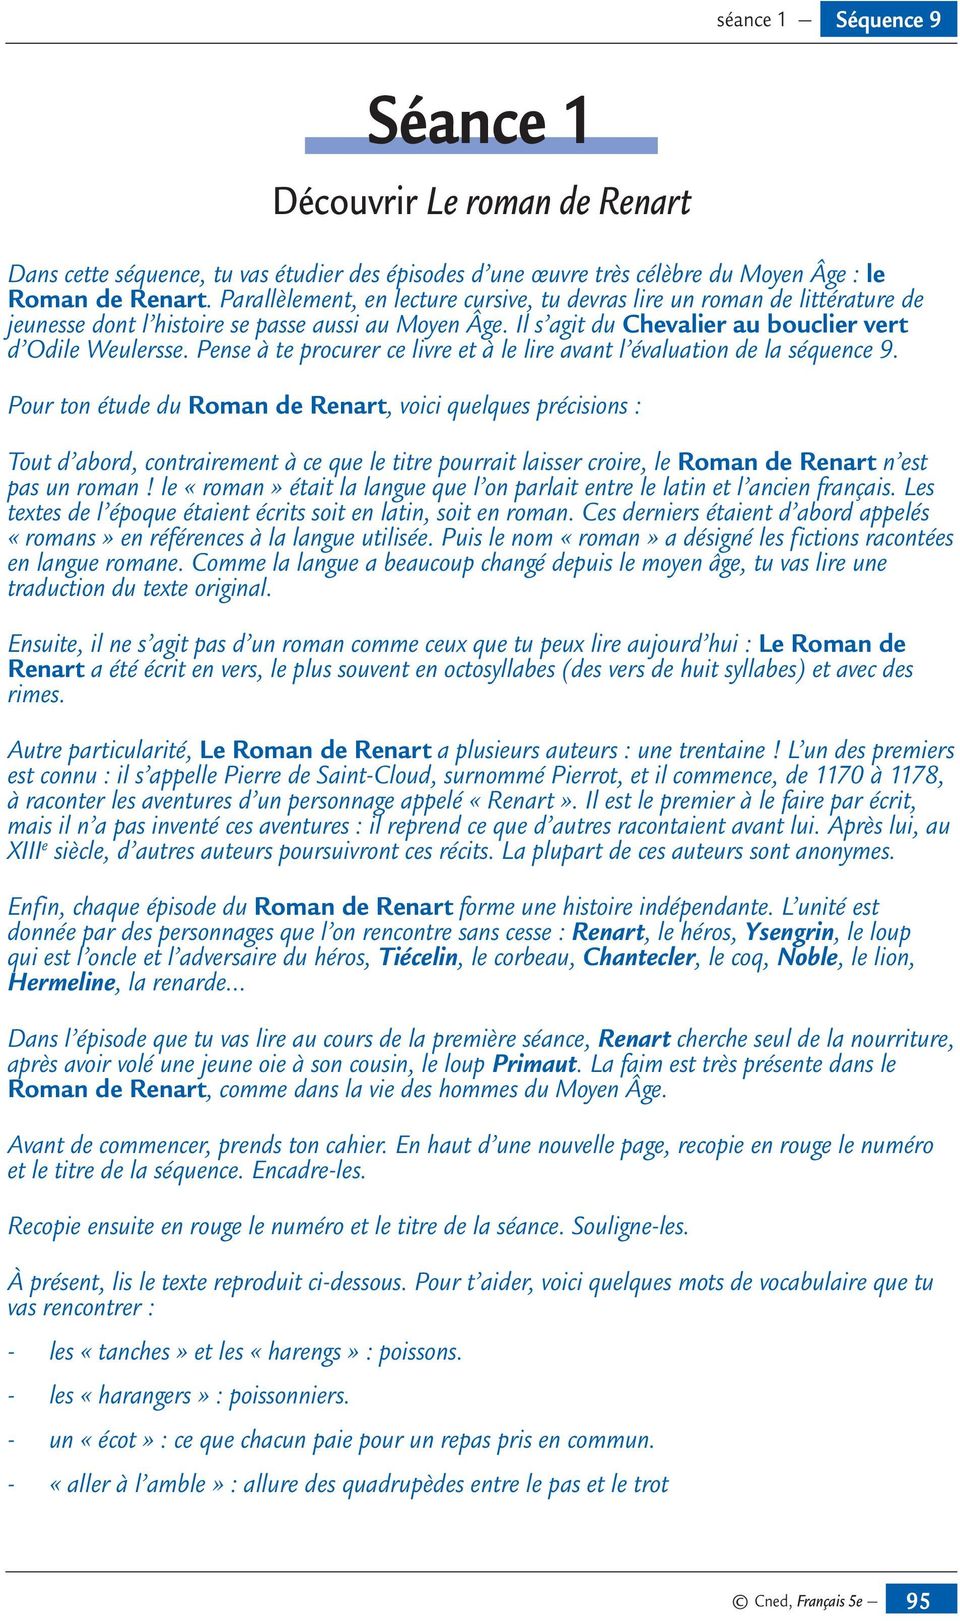 Résumé Le Roman De Renart Par Chapitre Lire Le Roman de Renart - PDF Téléchargement Gratuit